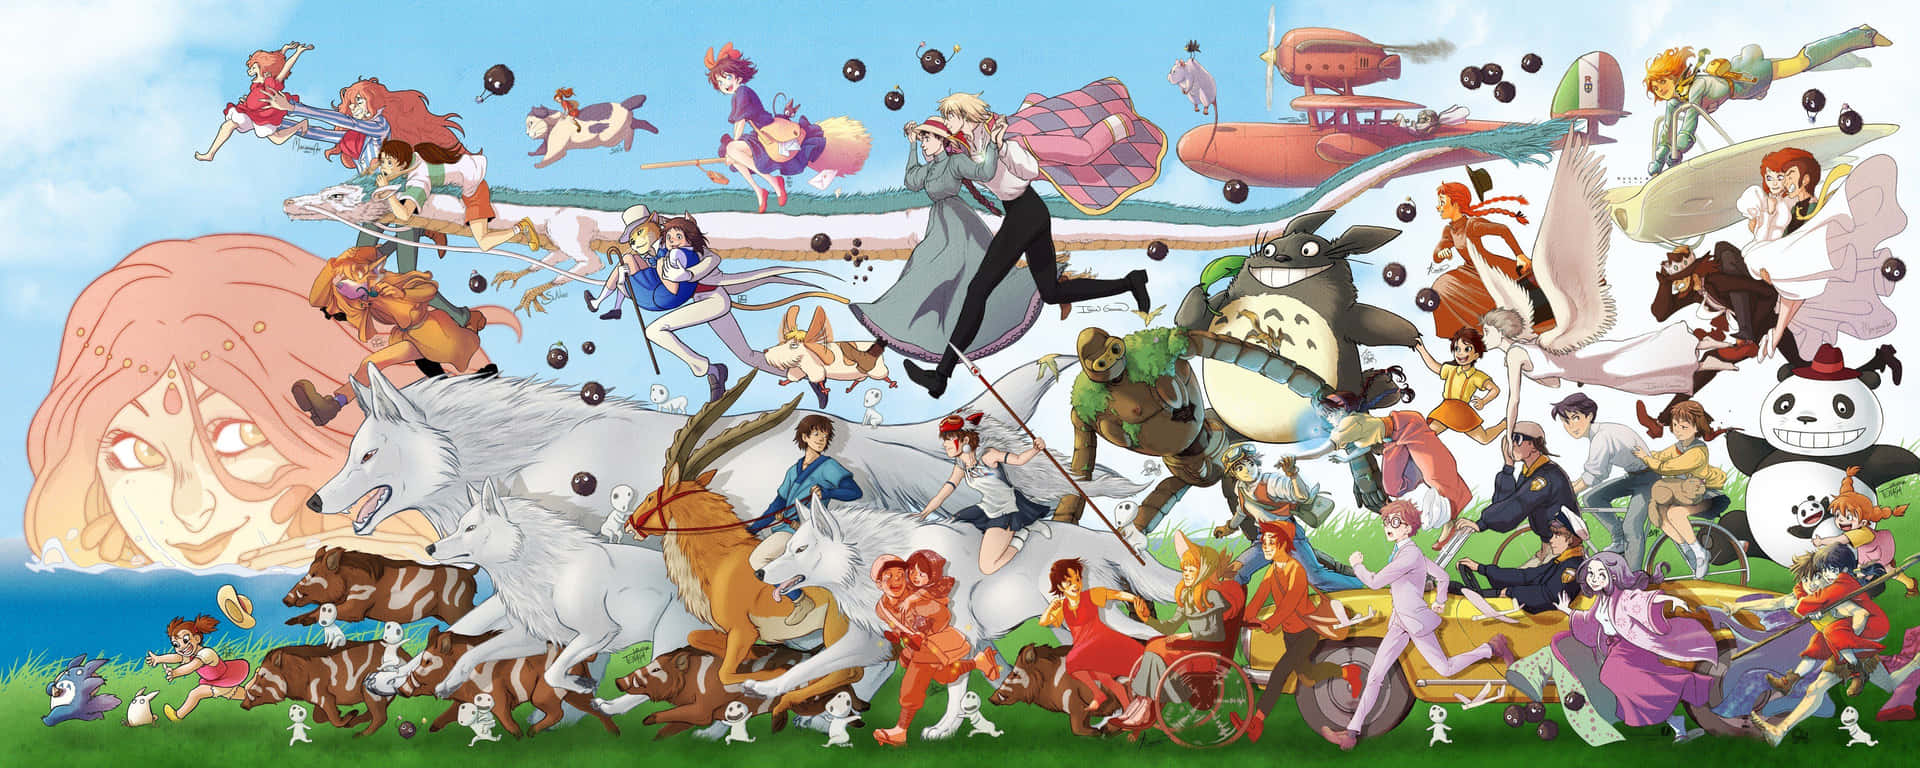 Discover the Epic Fantasy of Studio Ghibli's Princess Mononoke Wallpaper